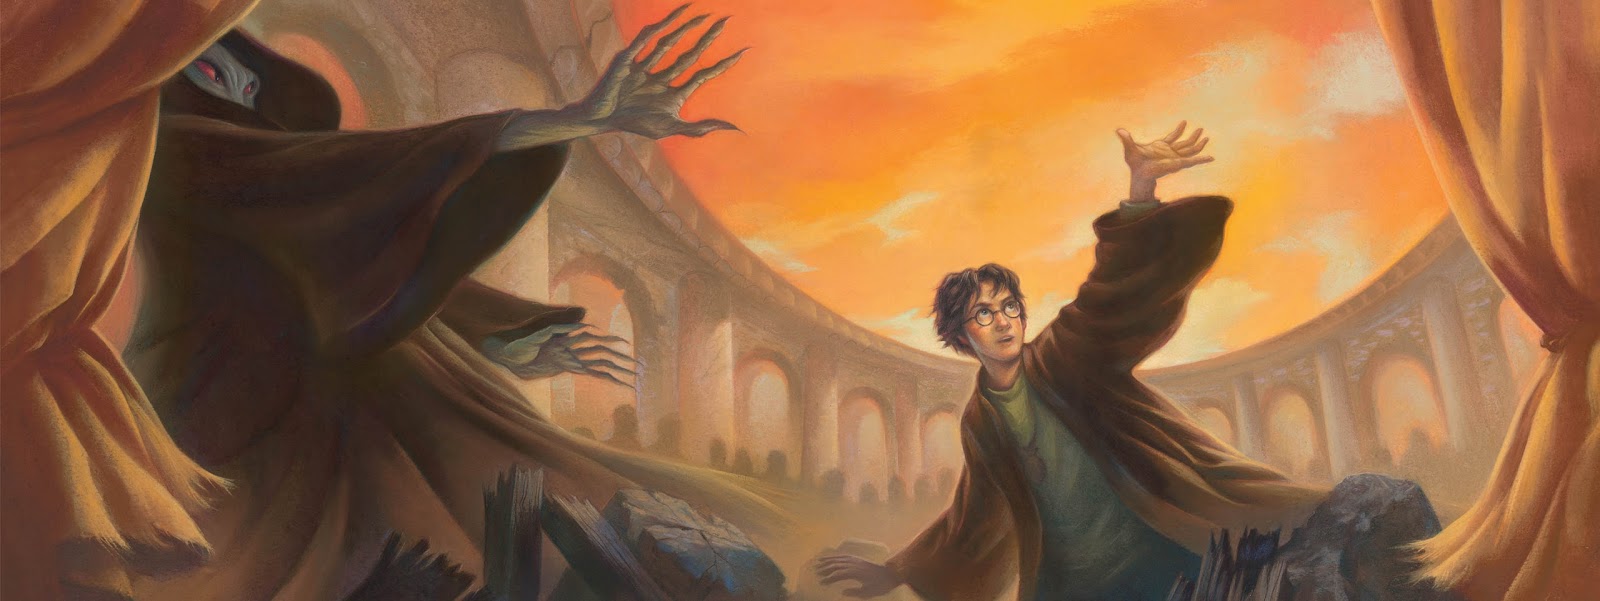 Harry Potter: Como era o mundo da cultura pop quando o último livro foi lançado?